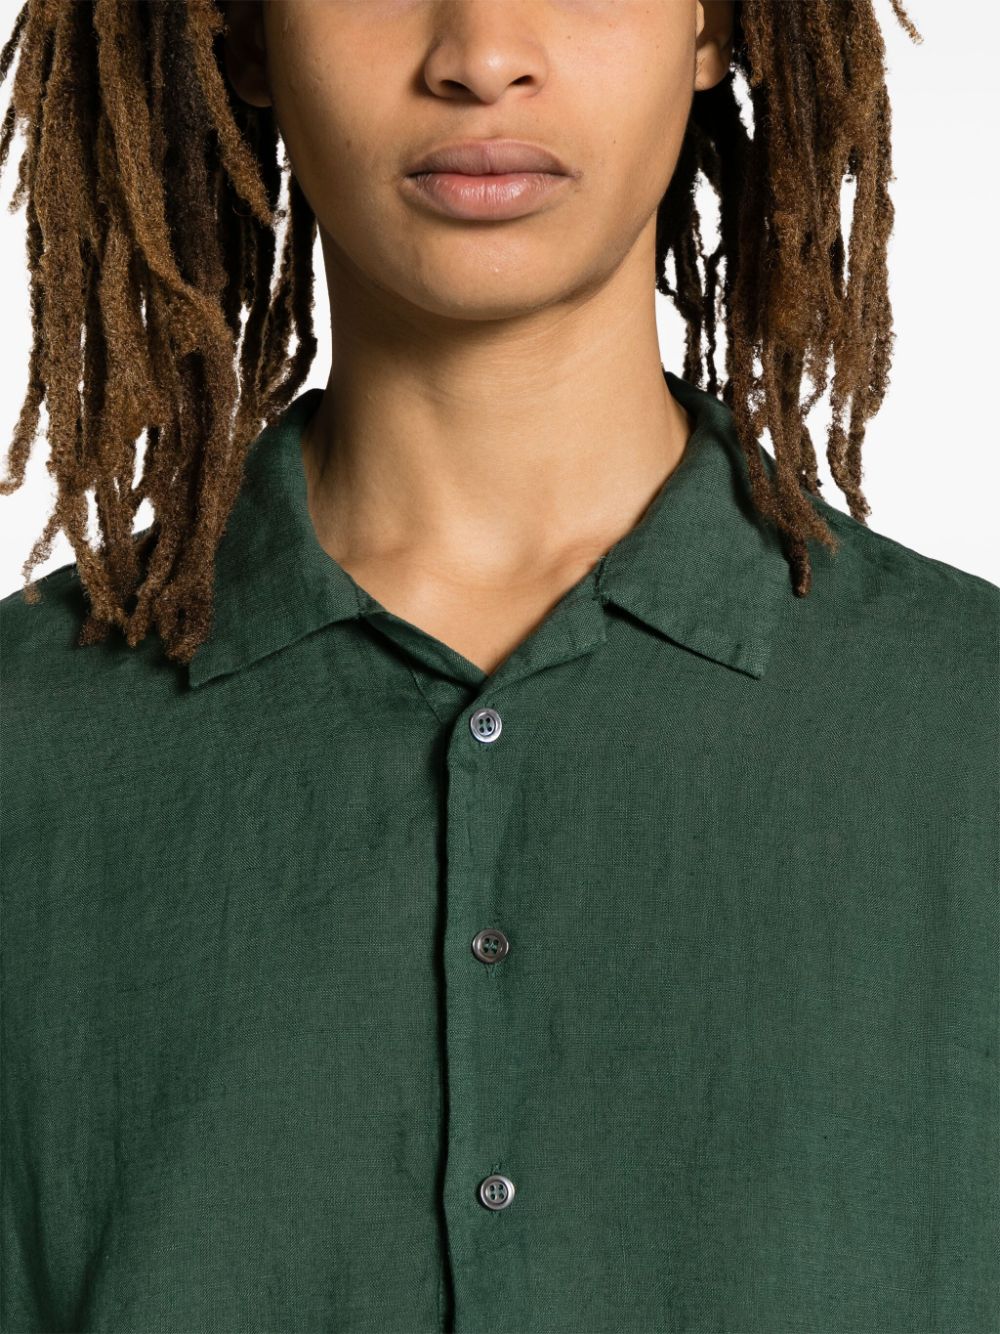 Green Mola shirt